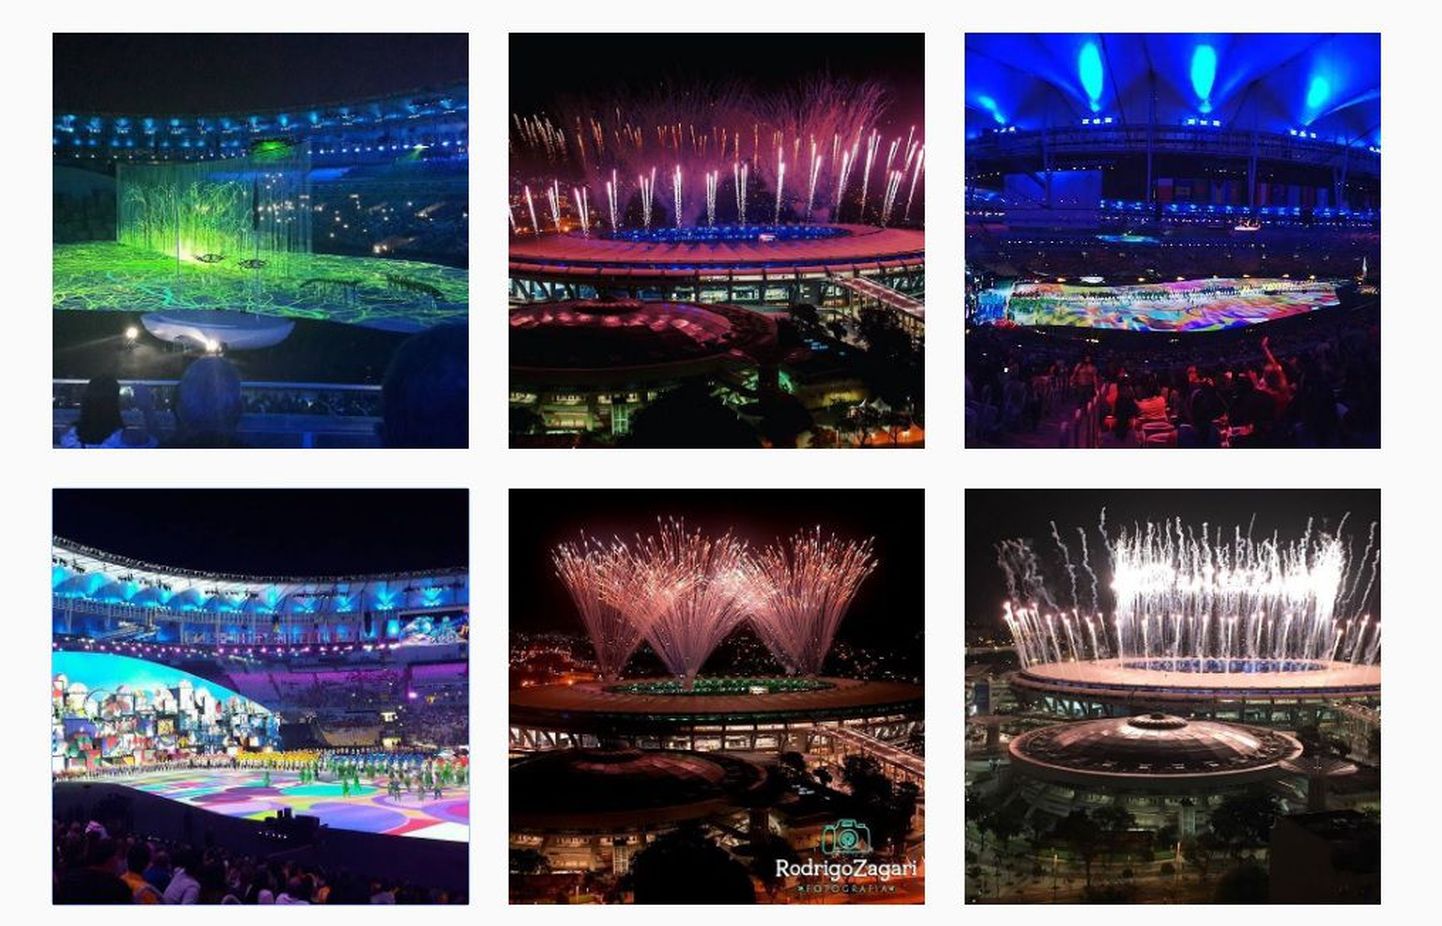 Генеральная репетиция олимпиады в Рио. Скриншот из профиля 2016olimpiadas в Instagram.